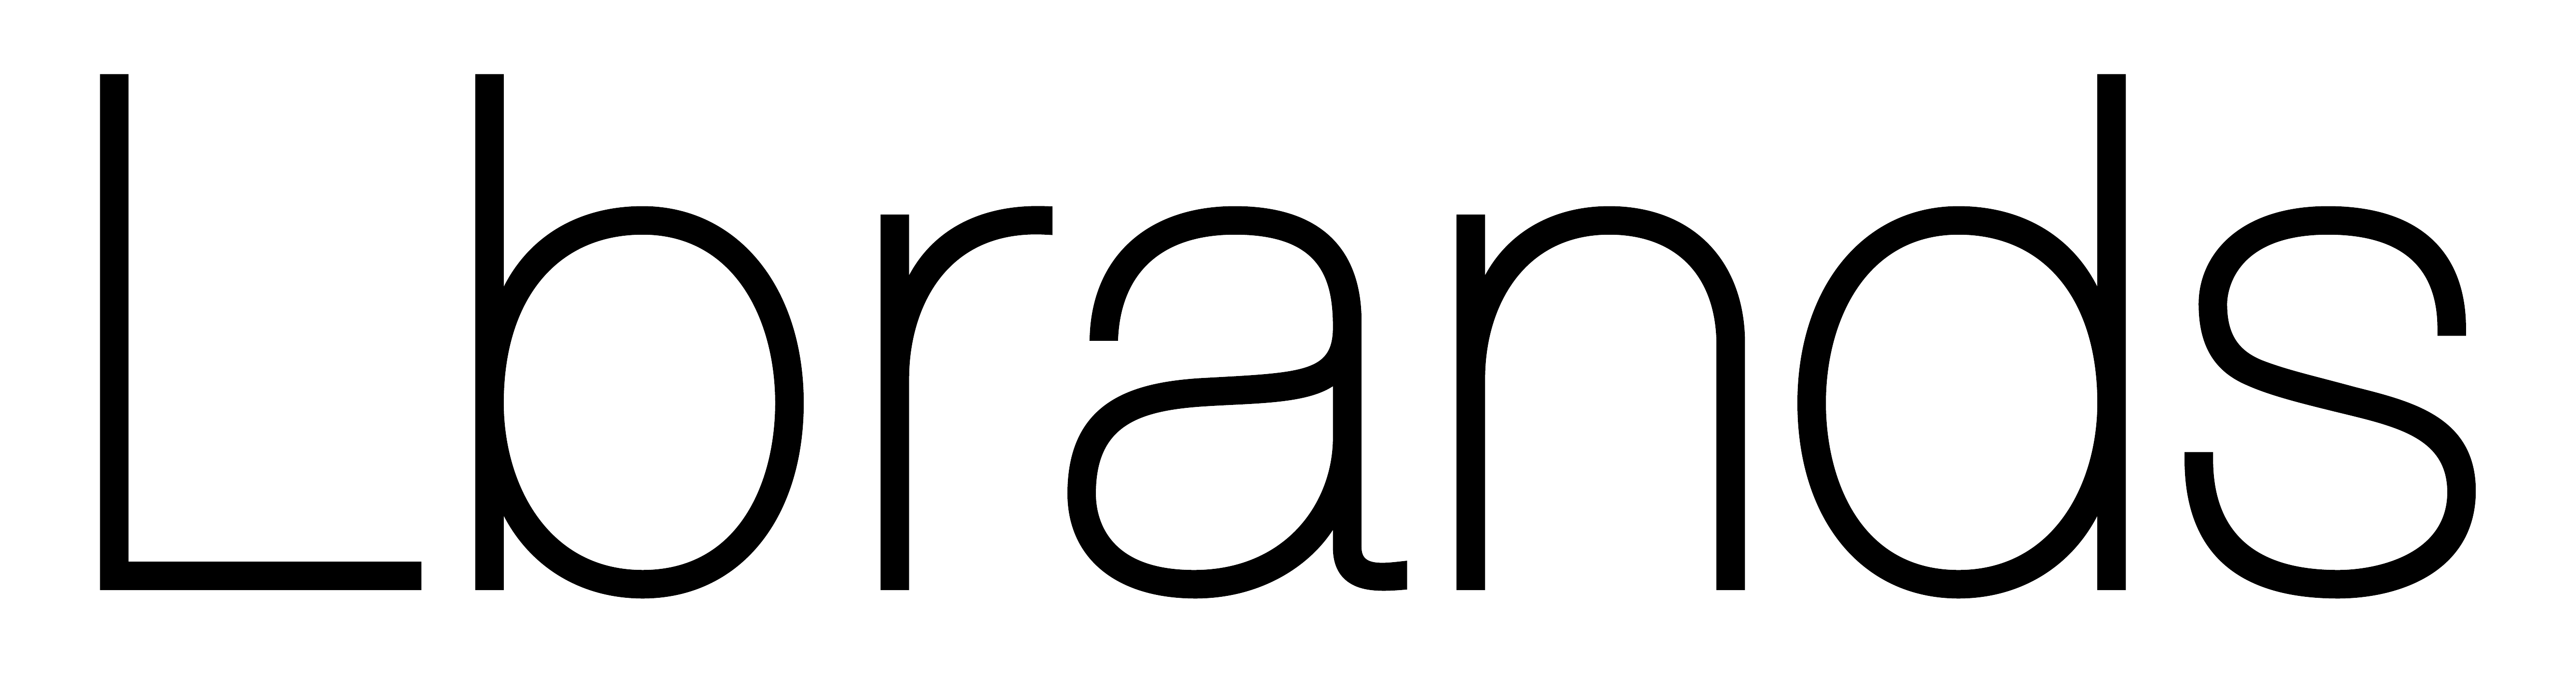 L Brands logo large (transparent PNG)